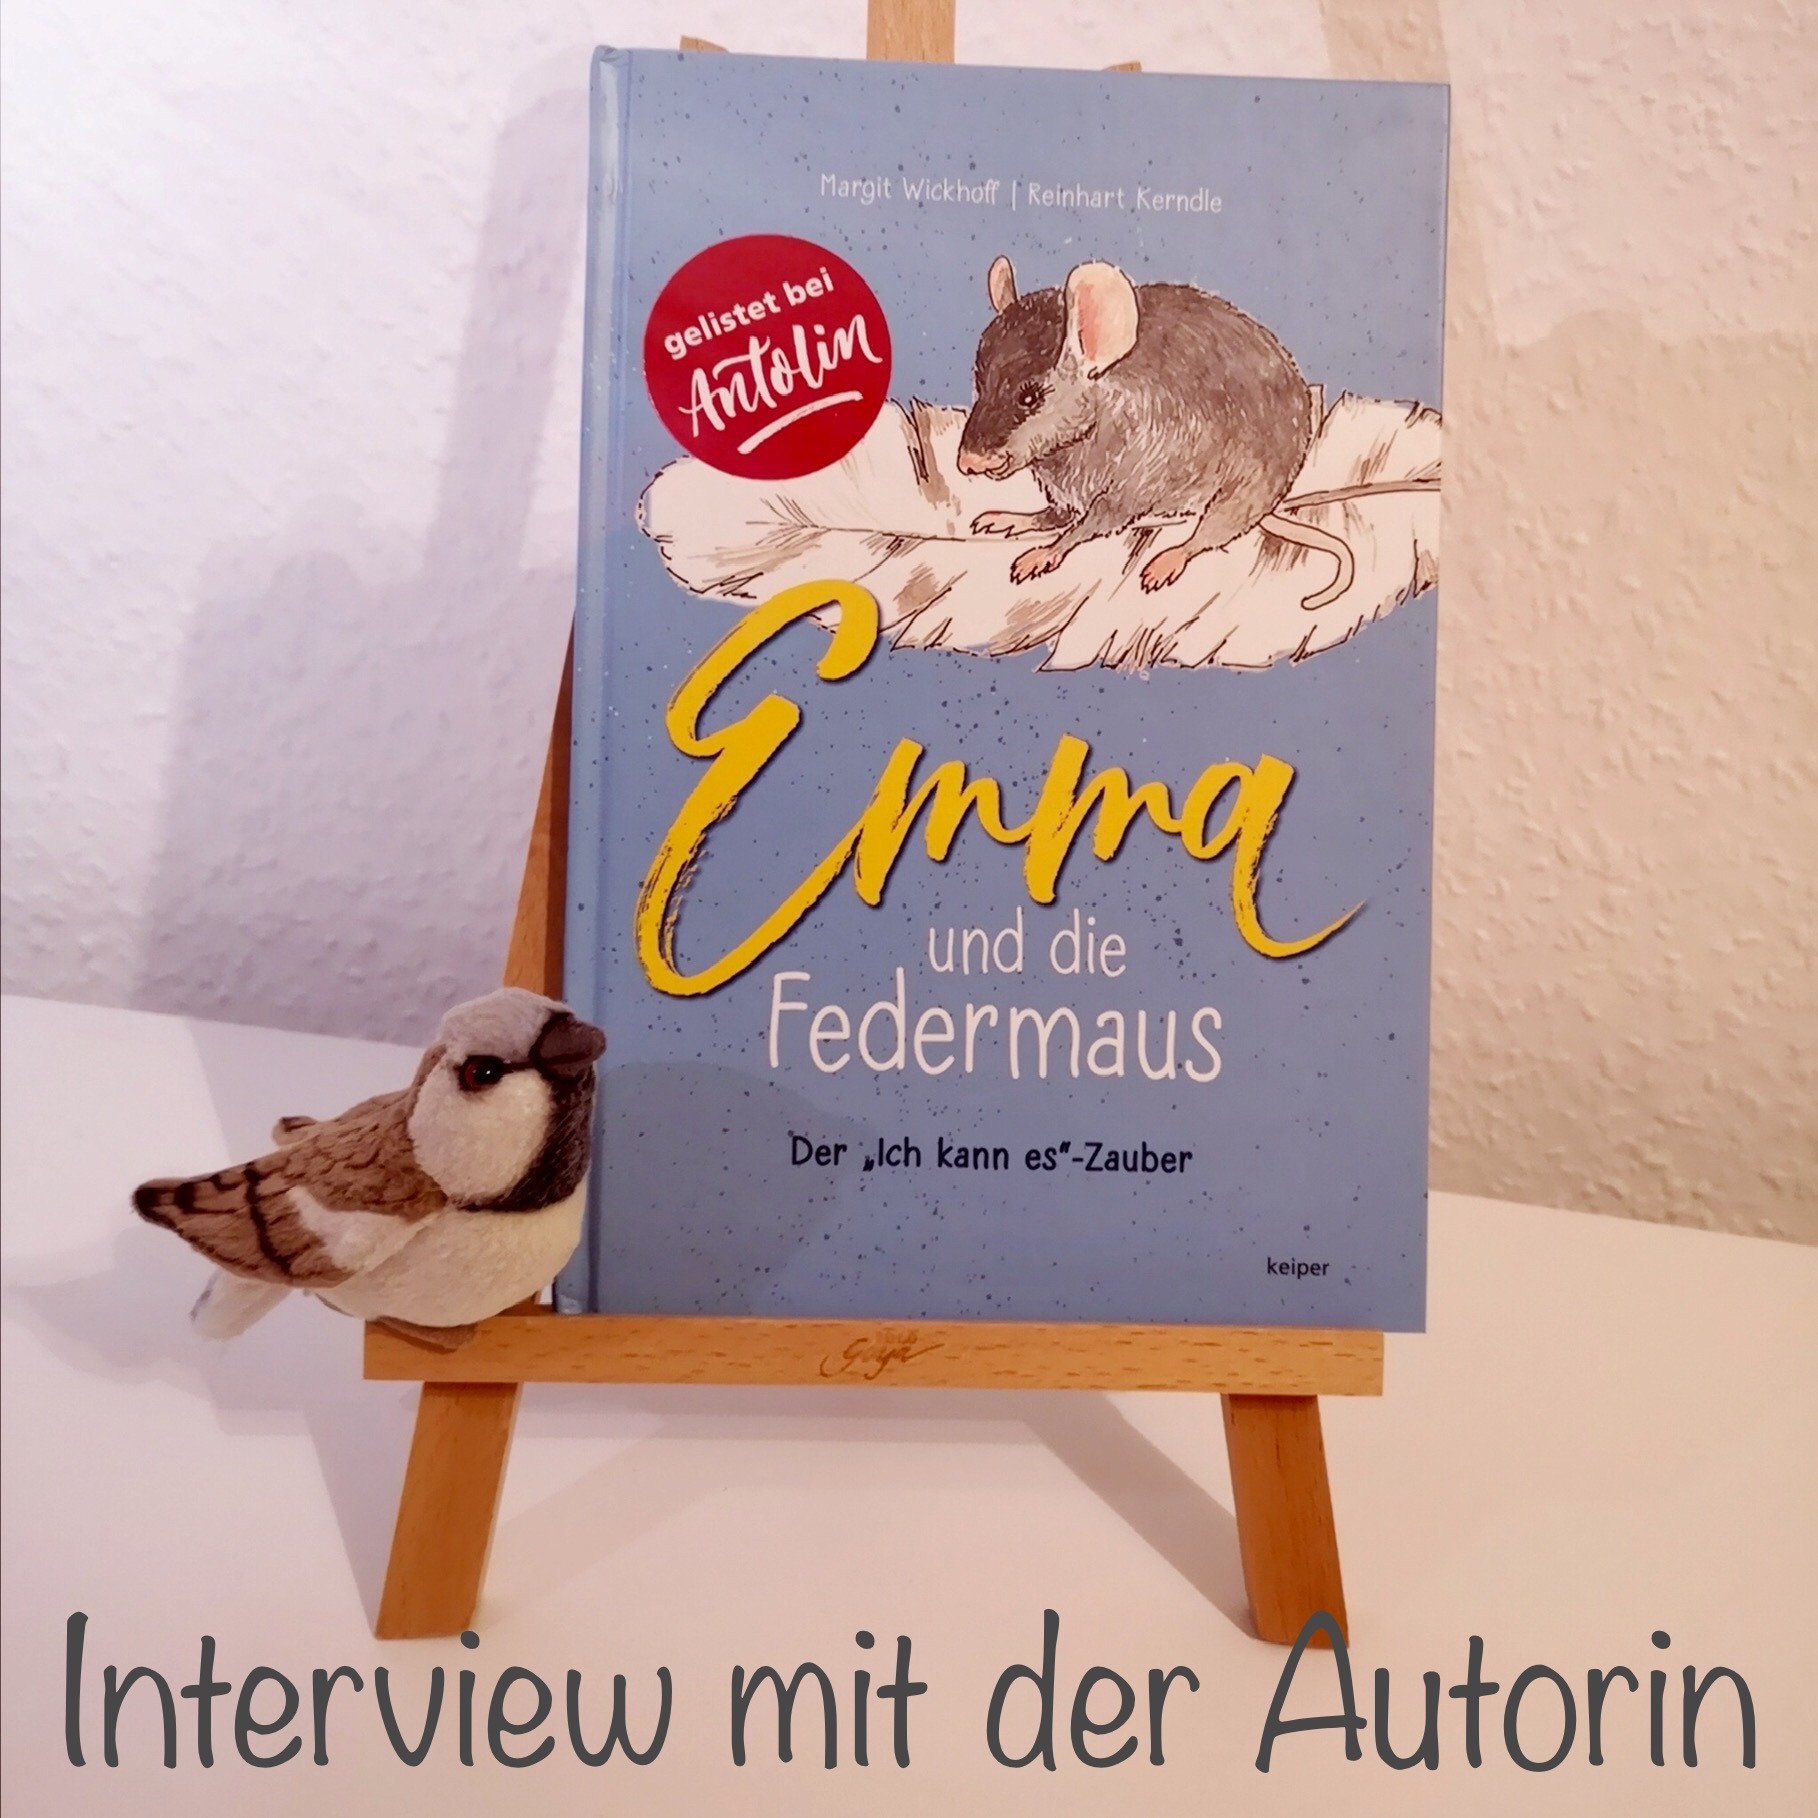 #113 – Interview mit der Autorin von ”Emma und die Federmaus”